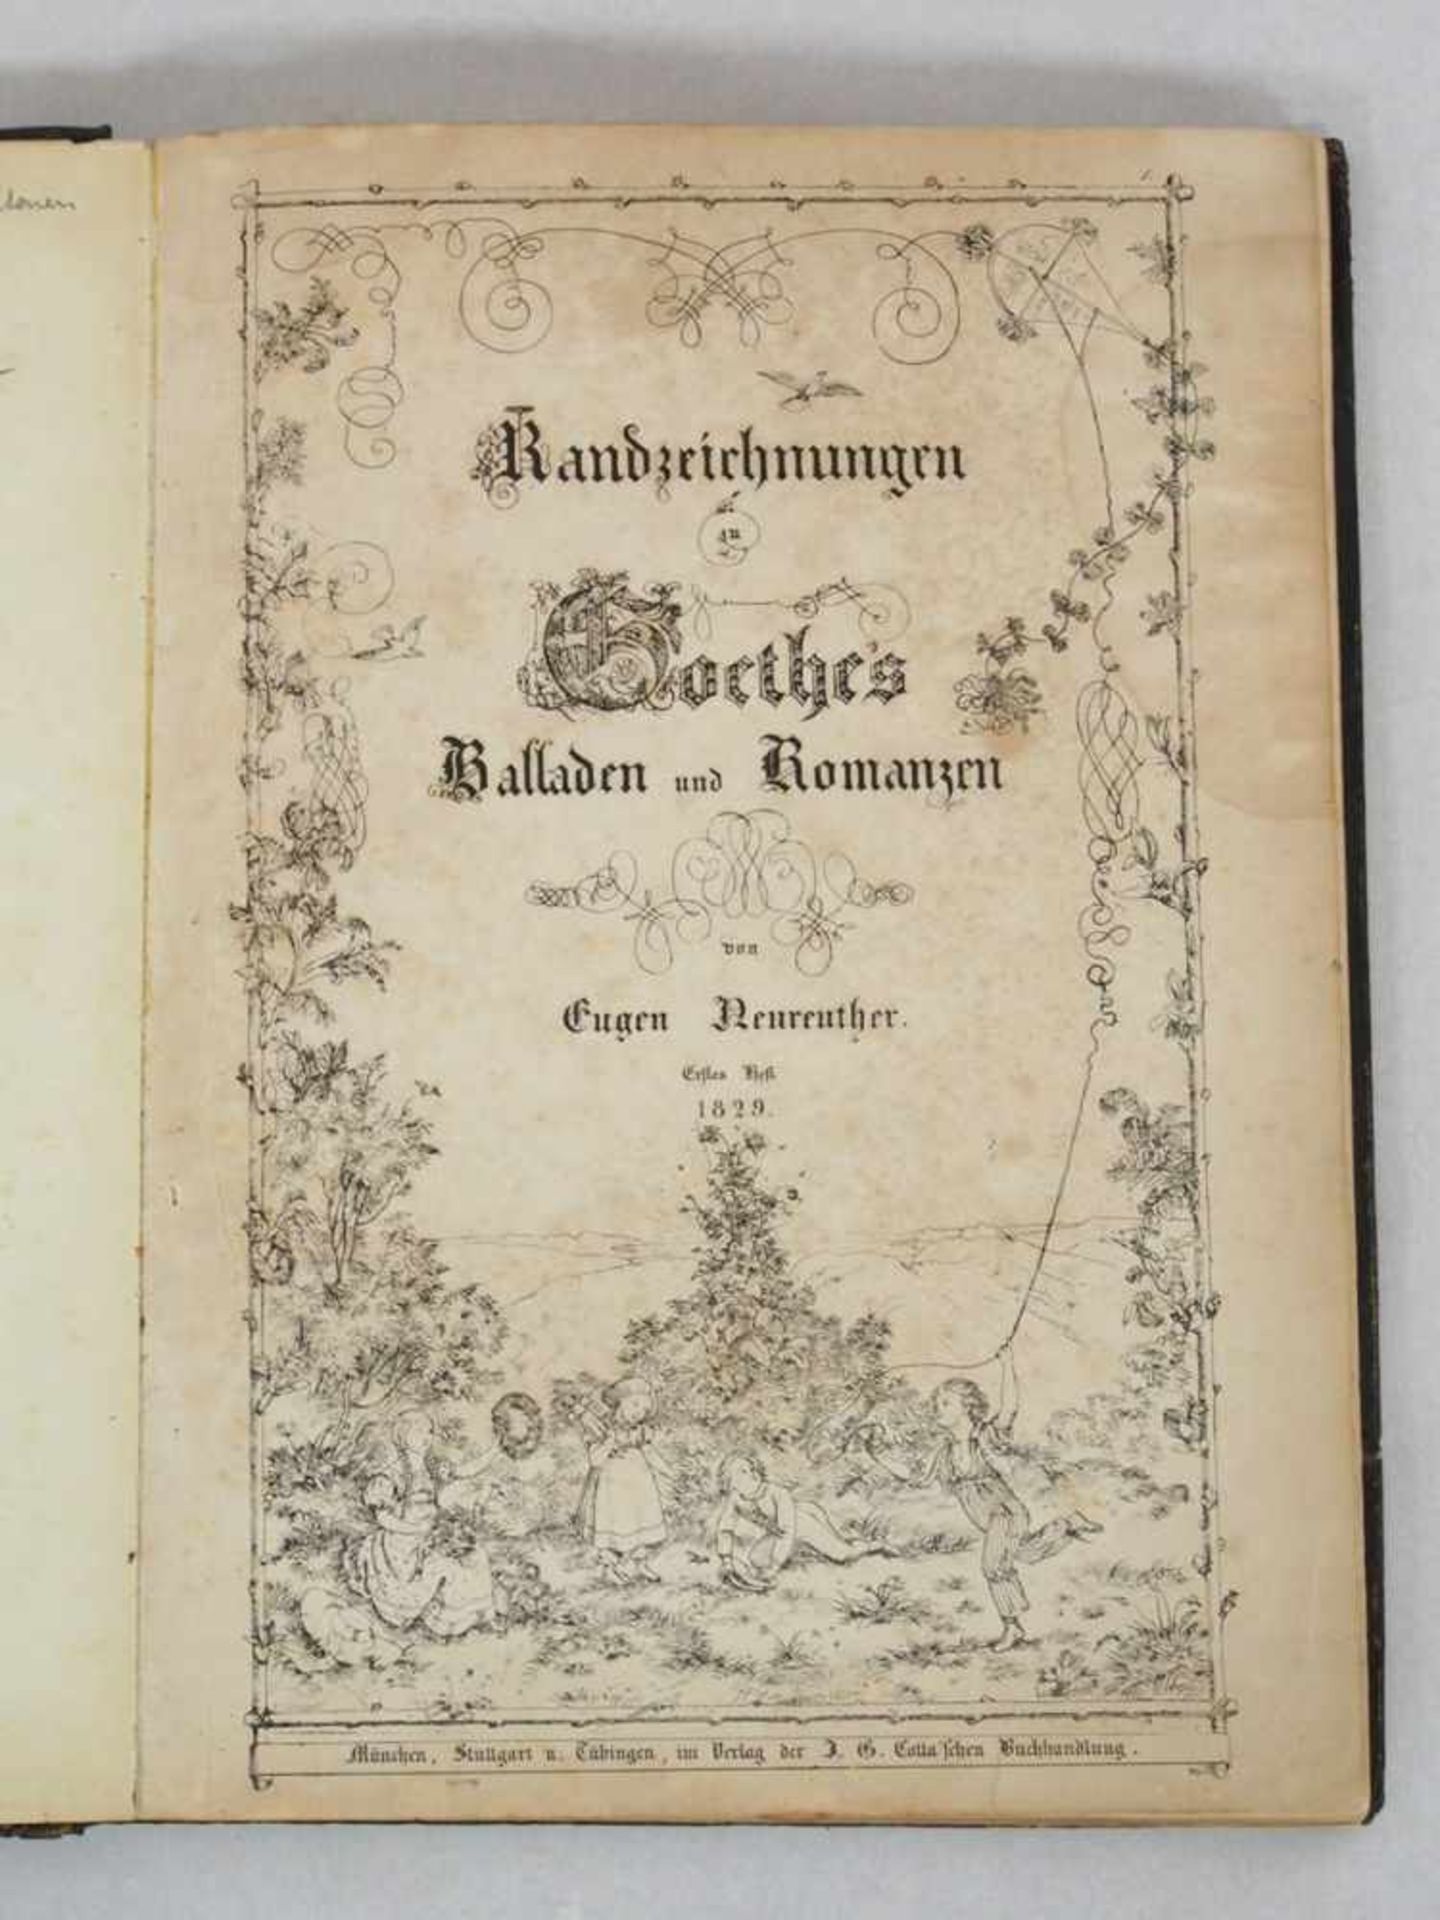 NEUREUTHER, EugenRandzeichnungen zu Goethes Balladen und Romanzen5 Hefte in einem Band, - Image 2 of 3